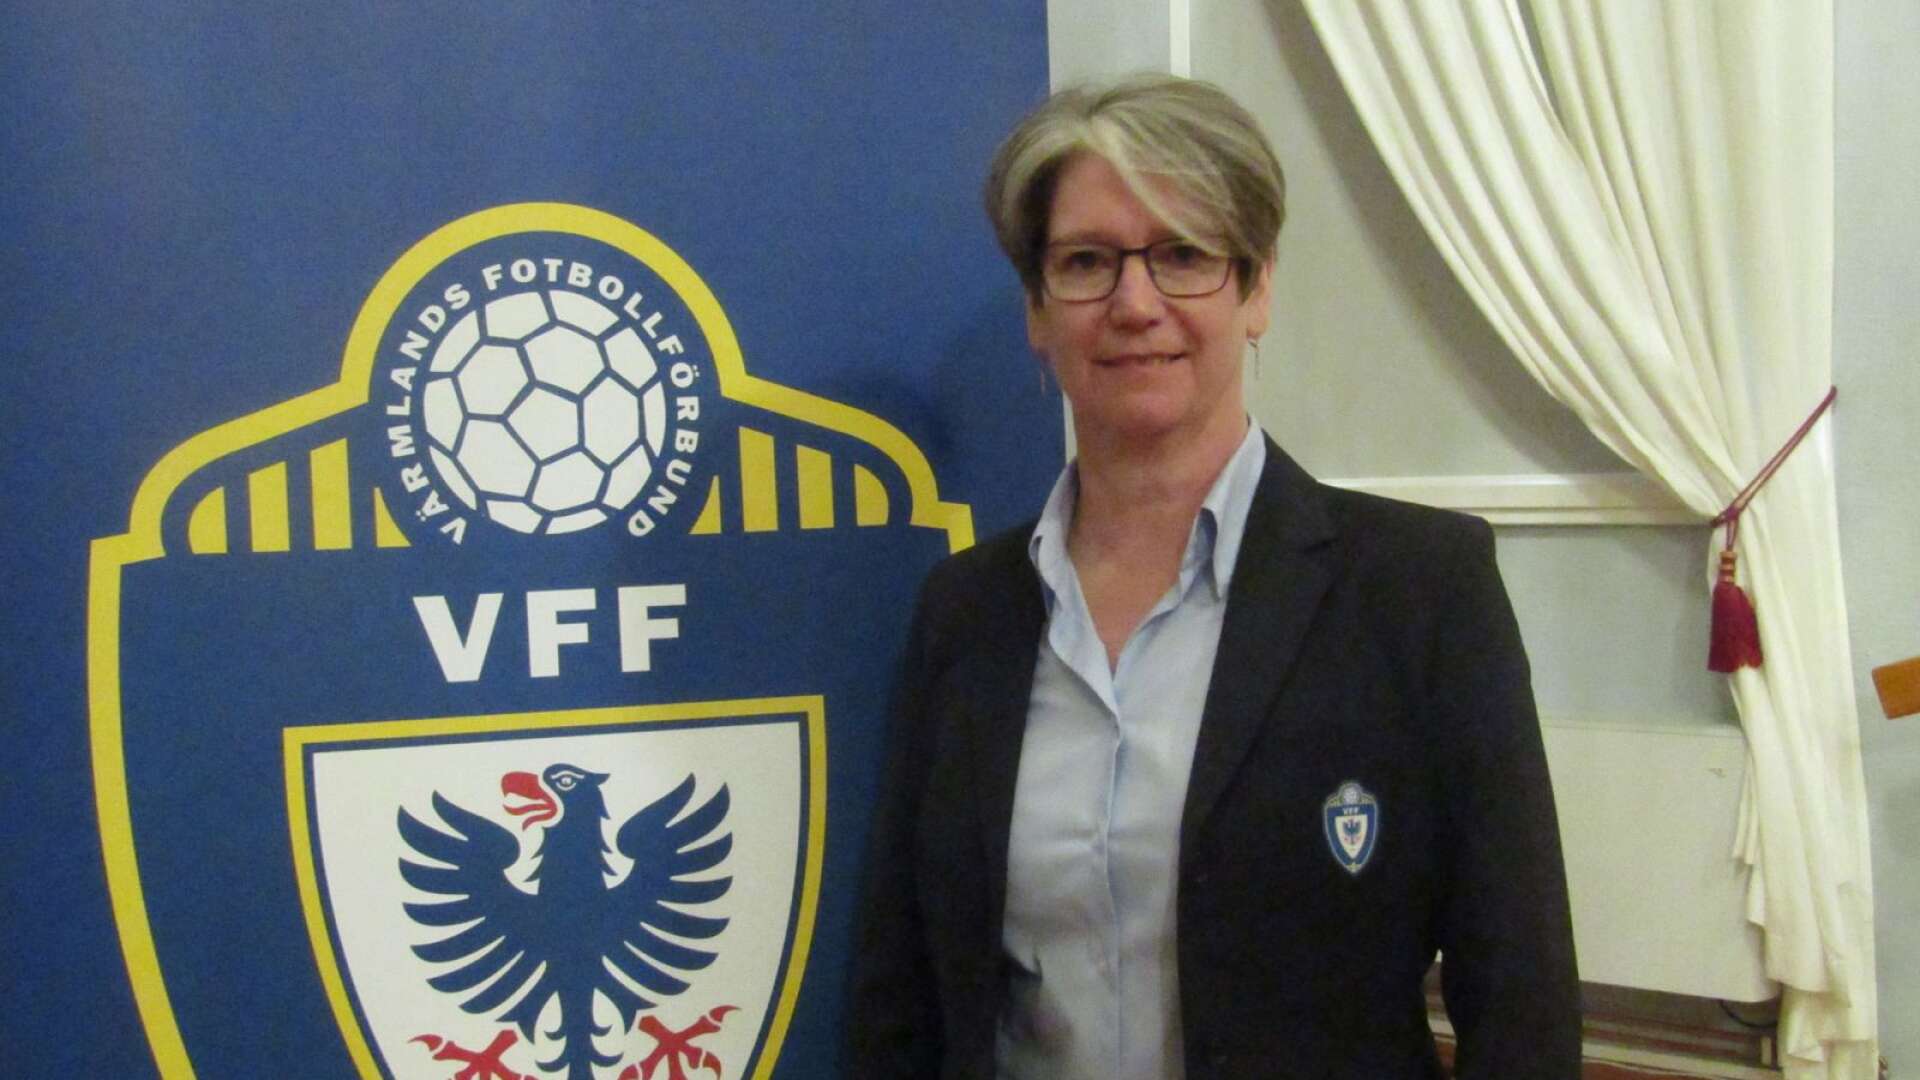 Annelie Larsson blir ny ordförande i Karlstad Fotboll. Det klubbades vid tisdagskvällen årsmöte.